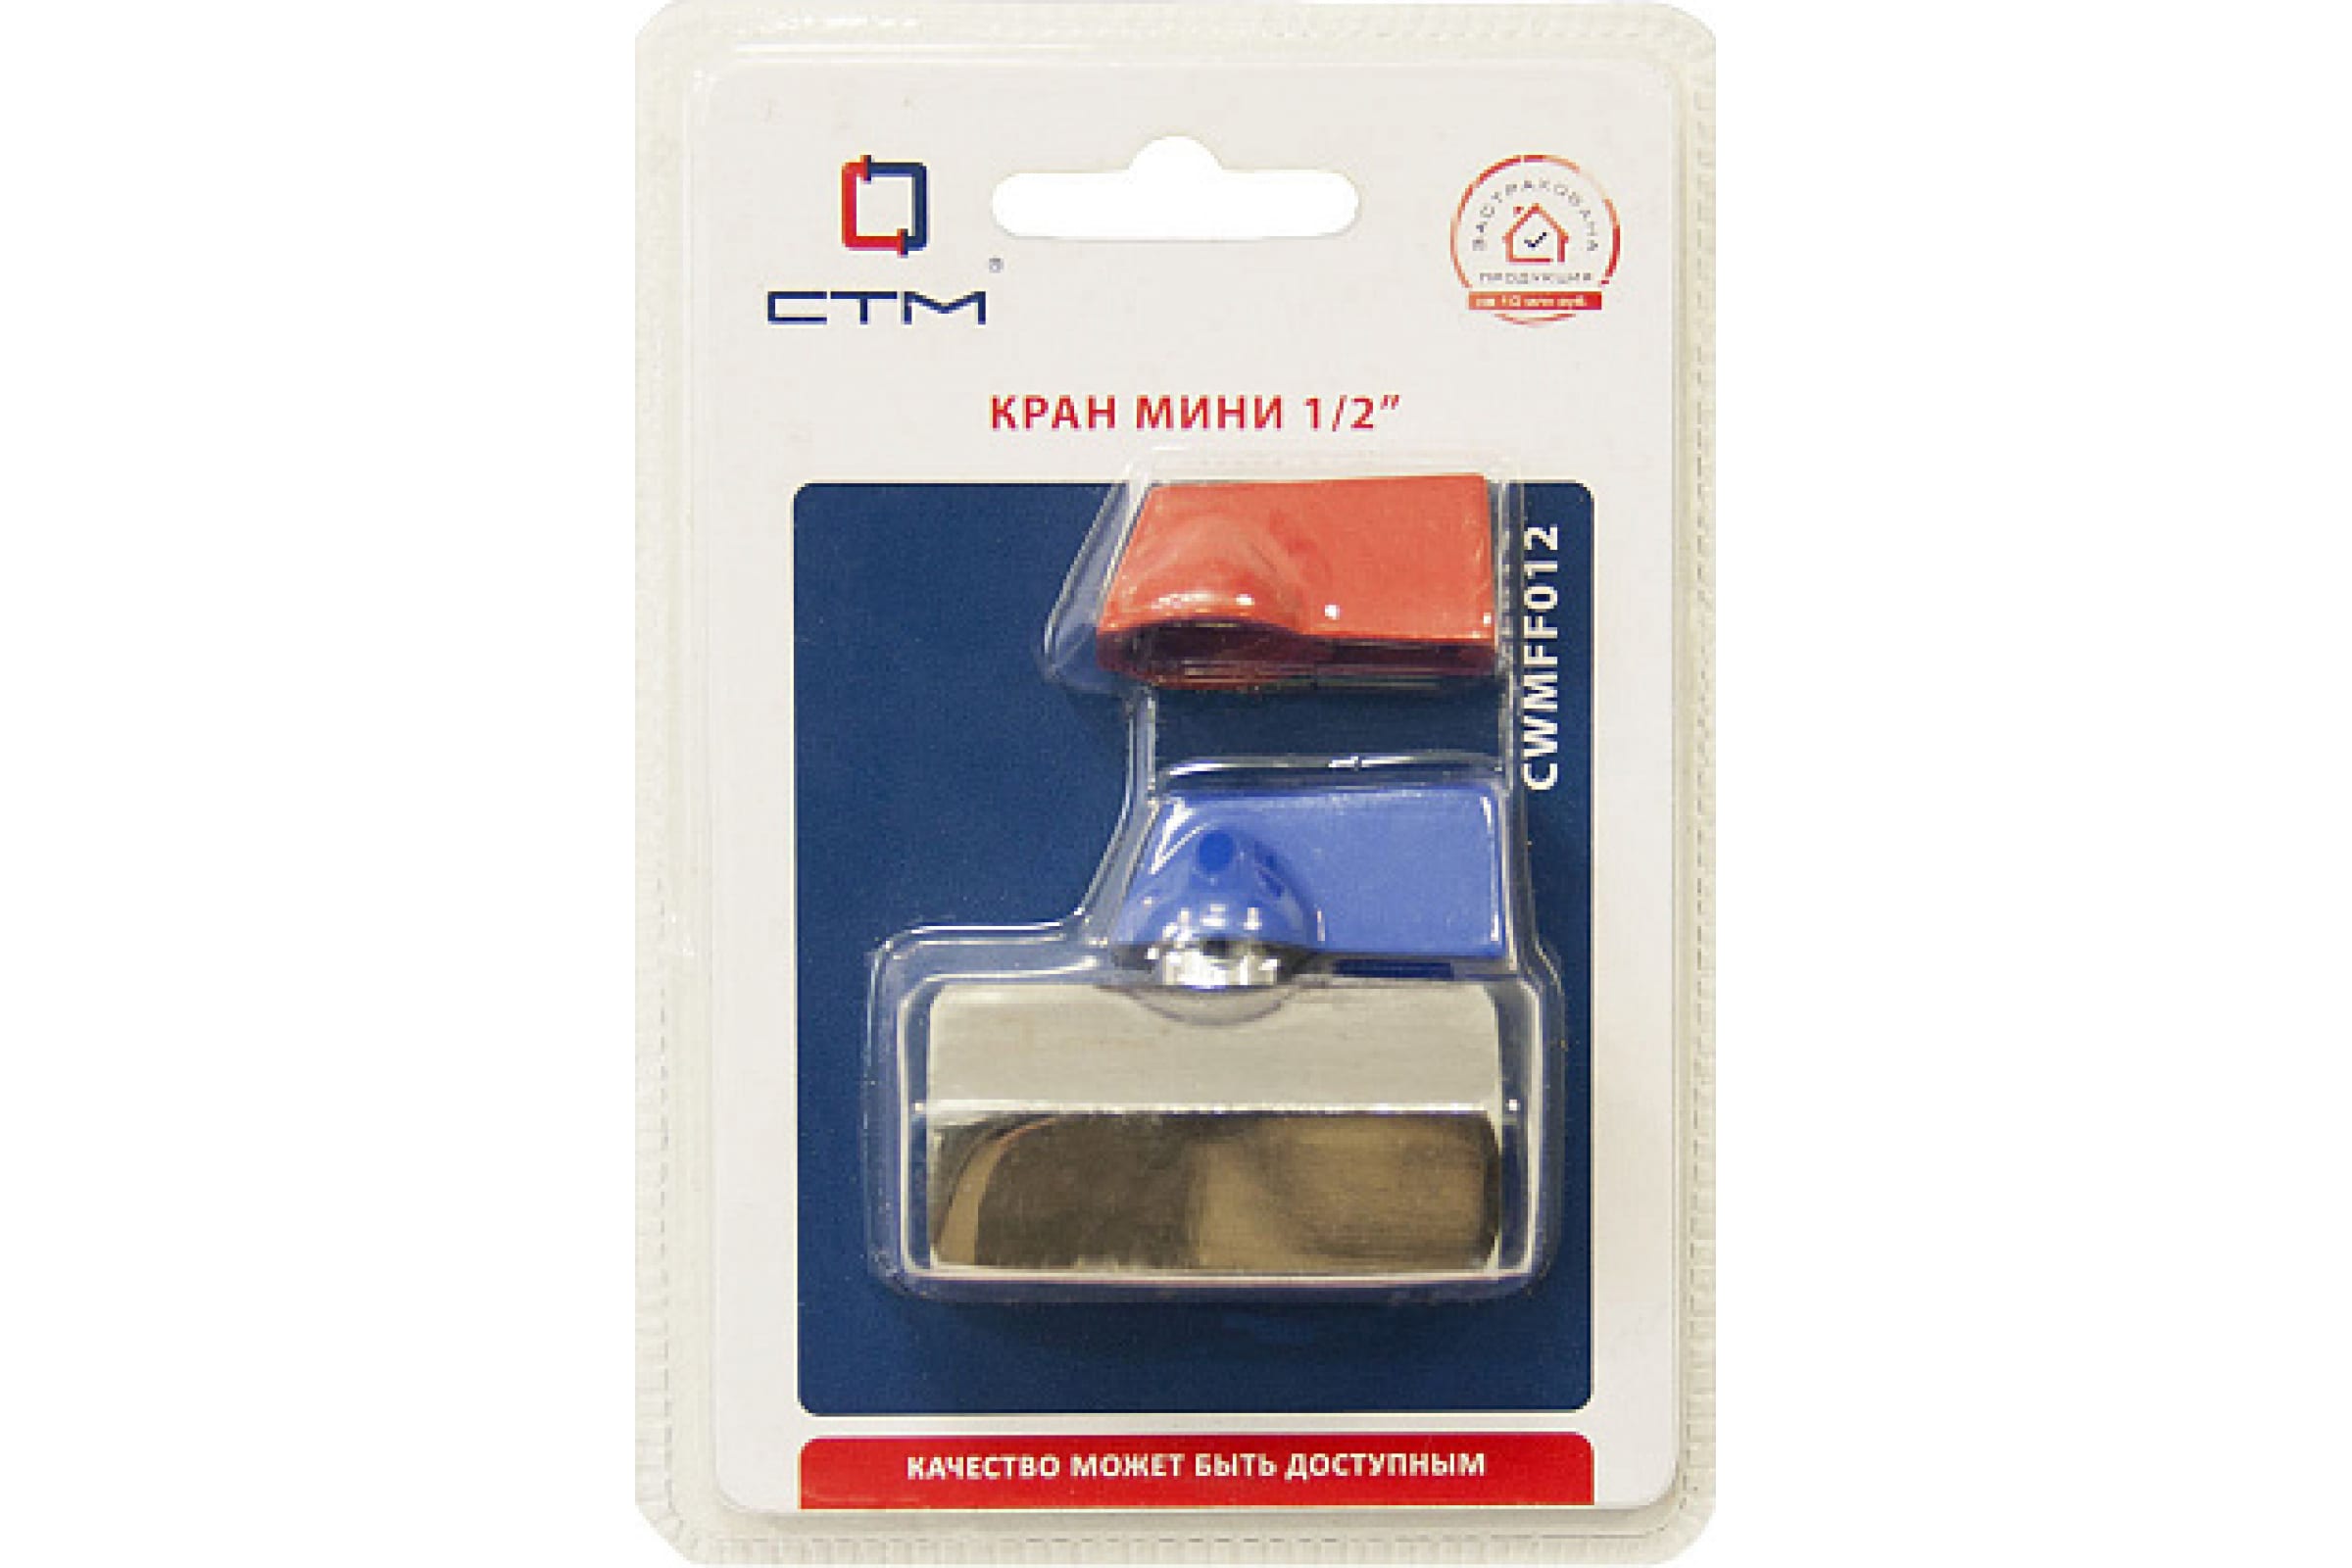  Вентиль шар 1/2" г/г мини CWMFF012 СТМ стандарт